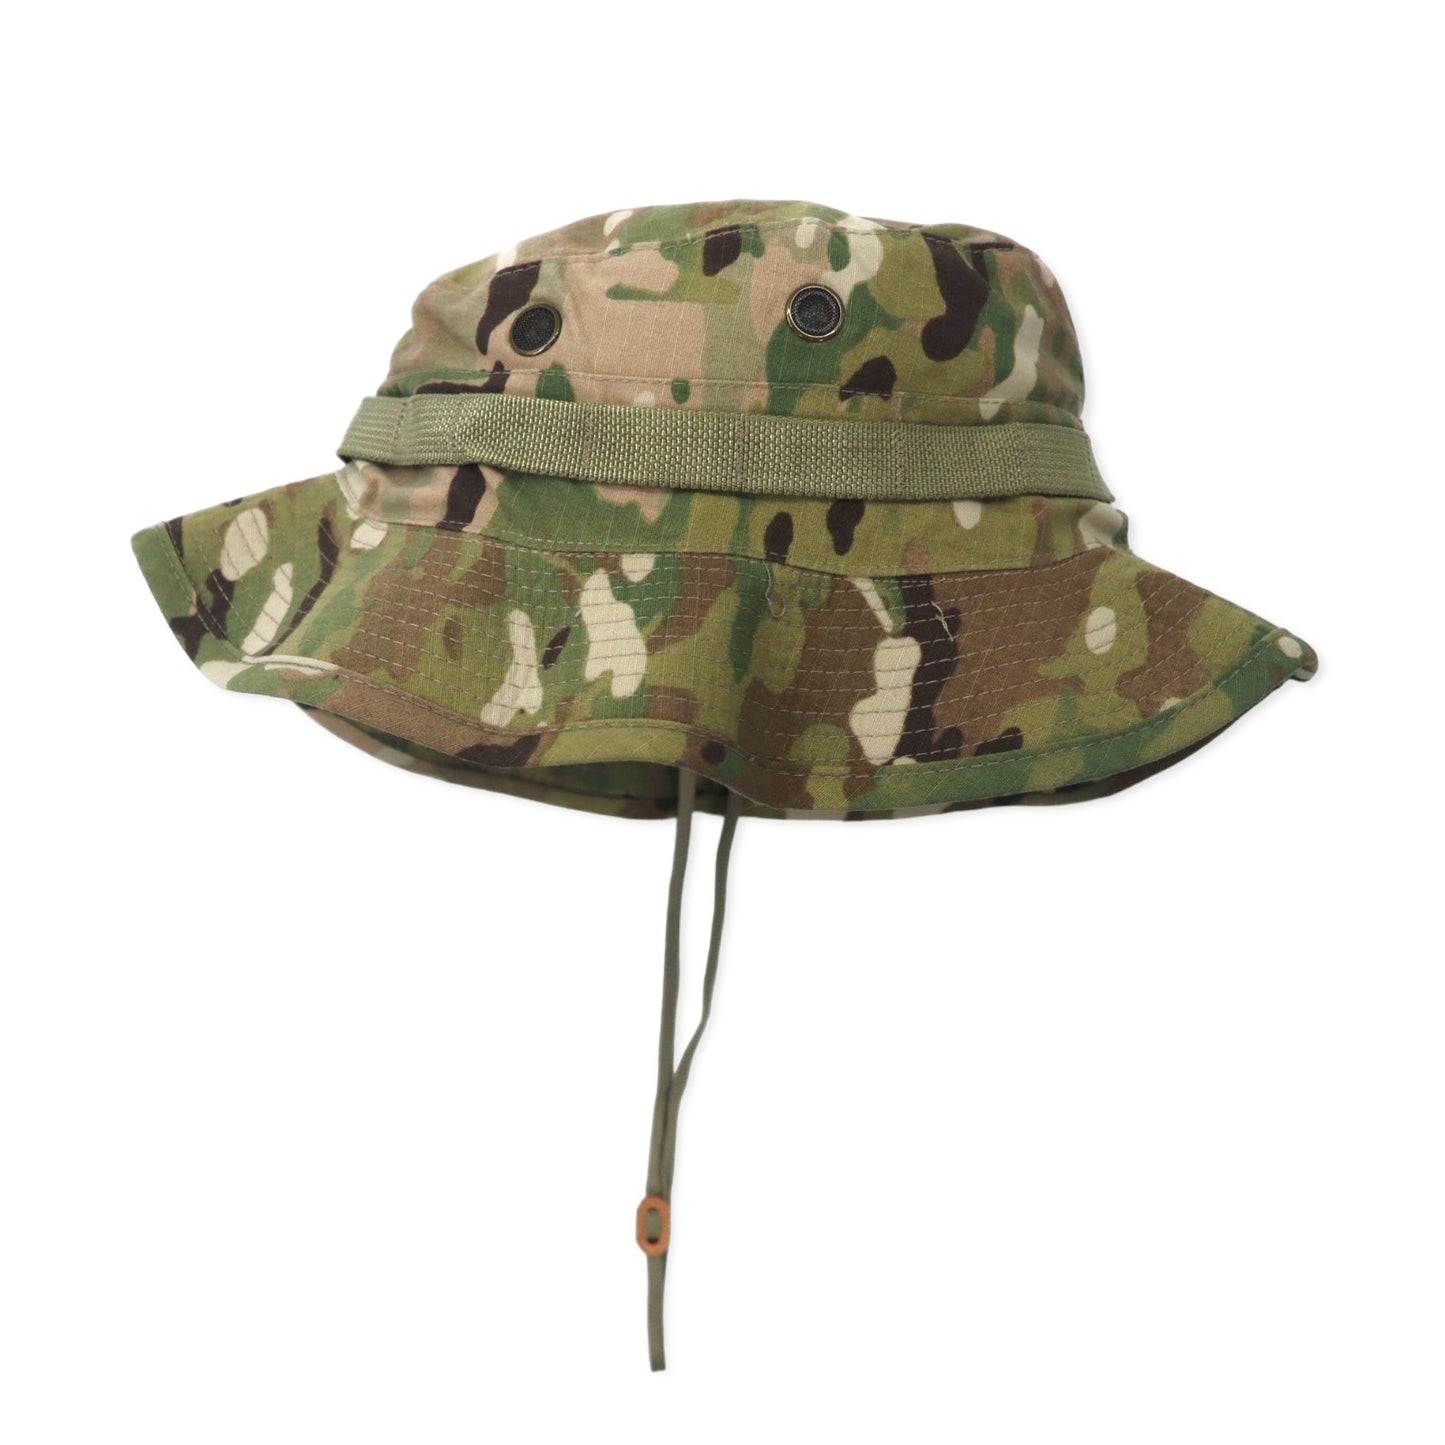 US ARMY サファリハット 58.7cm カーキ カモフラ ミリタリー HAT SUN WEATHER UNIFORM TYPE Ⅵ 8415-01-579-9210 BERNARD CAP Co.